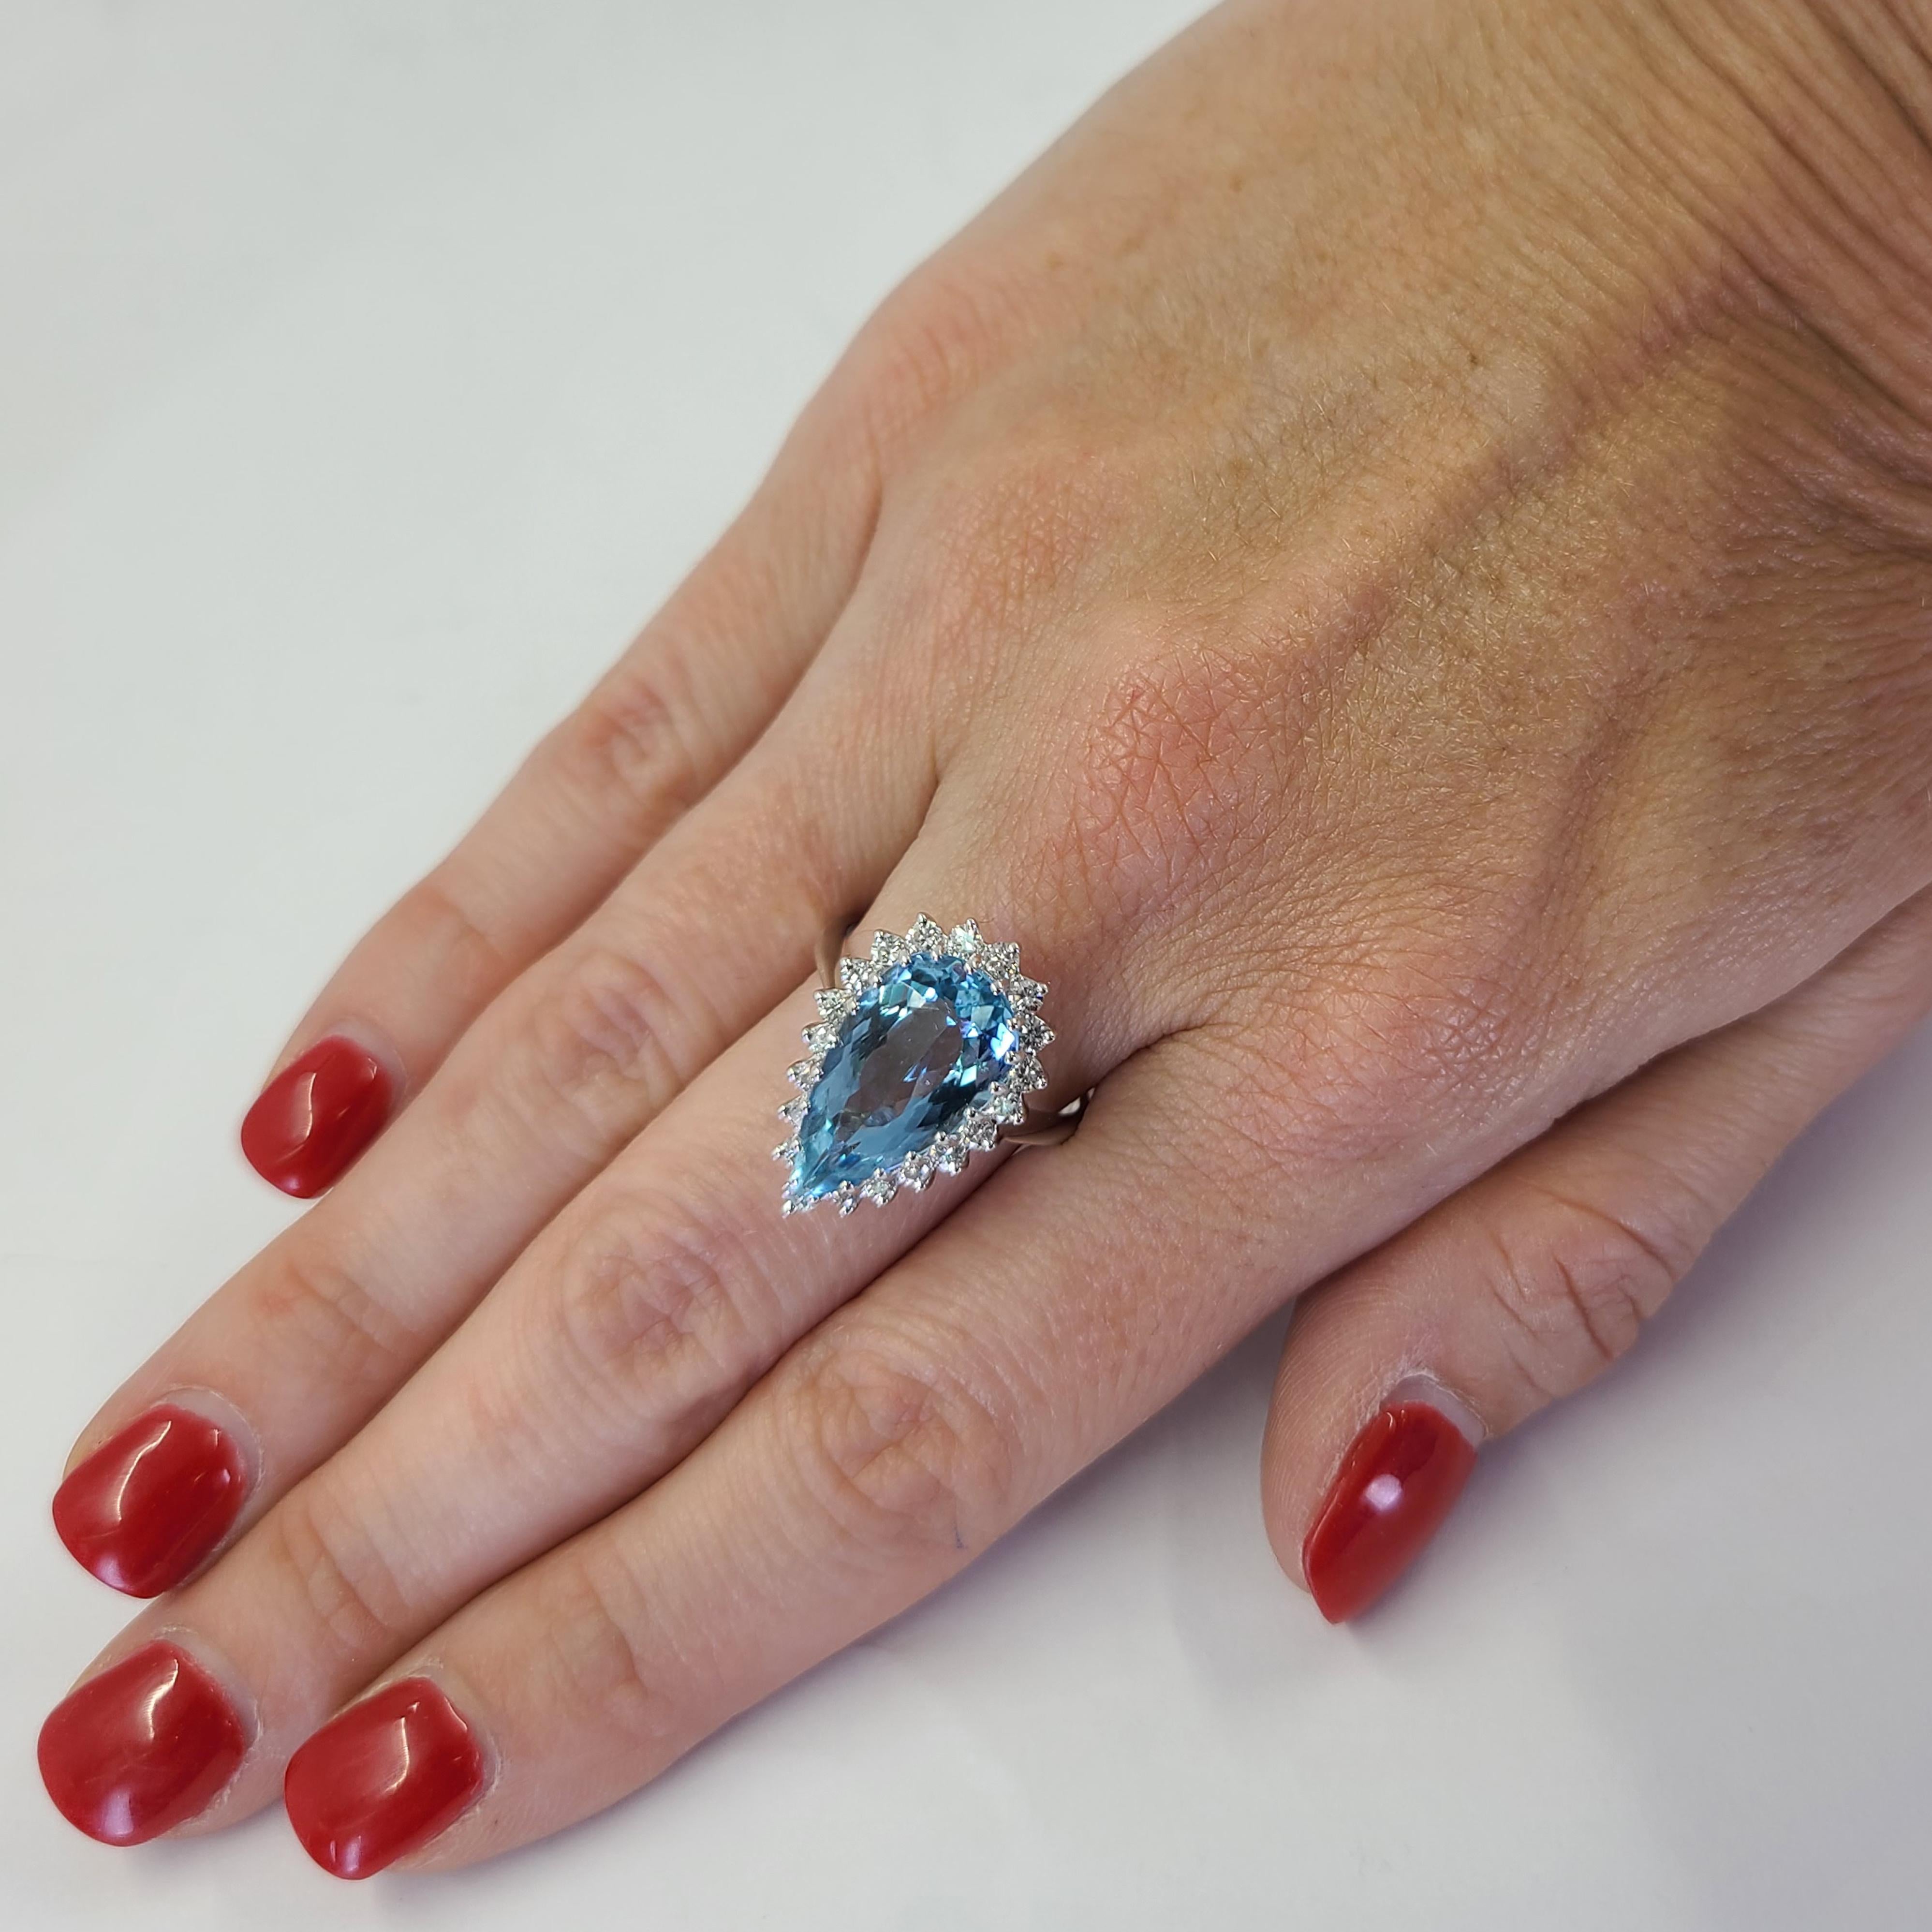 14 Karat Weißgold Ring mit einem 3,50 Karat leuchtend blauen Aquamarin im Birnenschliff, akzentuiert durch einen Halo aus 20 runden Diamanten von VS Reinheit und G Farbe von insgesamt 0,60 Karat. Fingergröße 8; Der Kauf beinhaltet einen